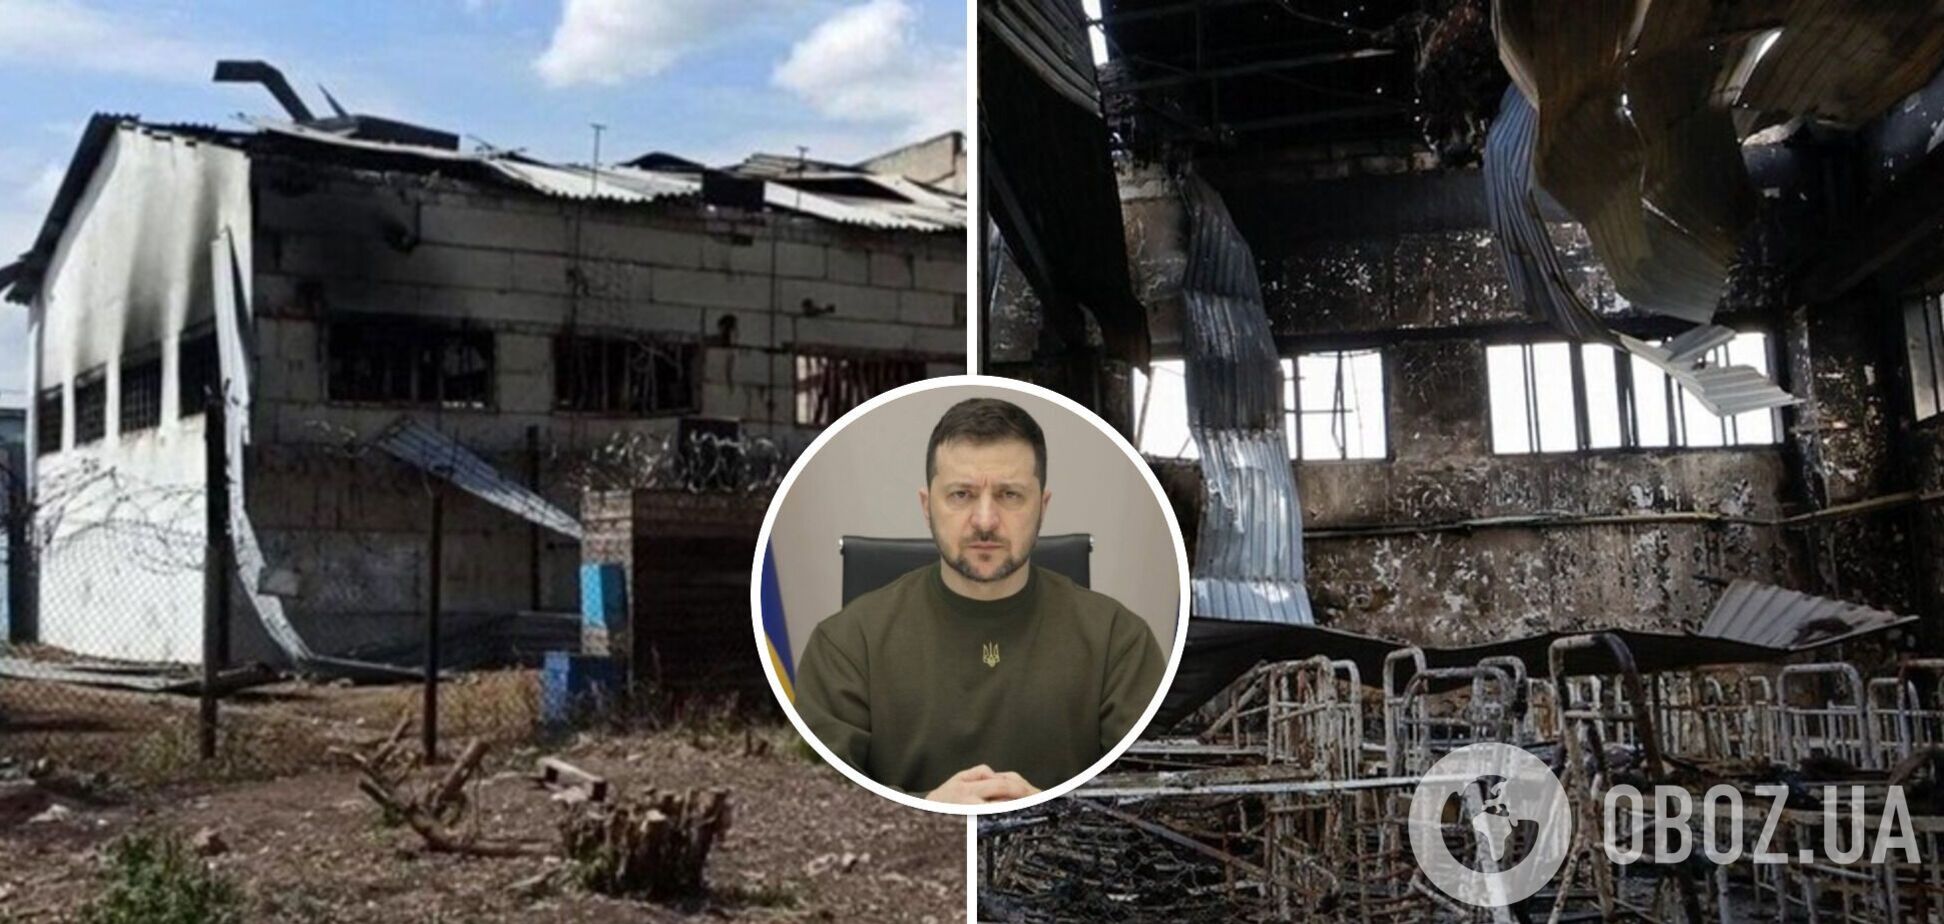 Зеленский заверил, что Украина борется за наказание всех виновных в теракте в Еленовке